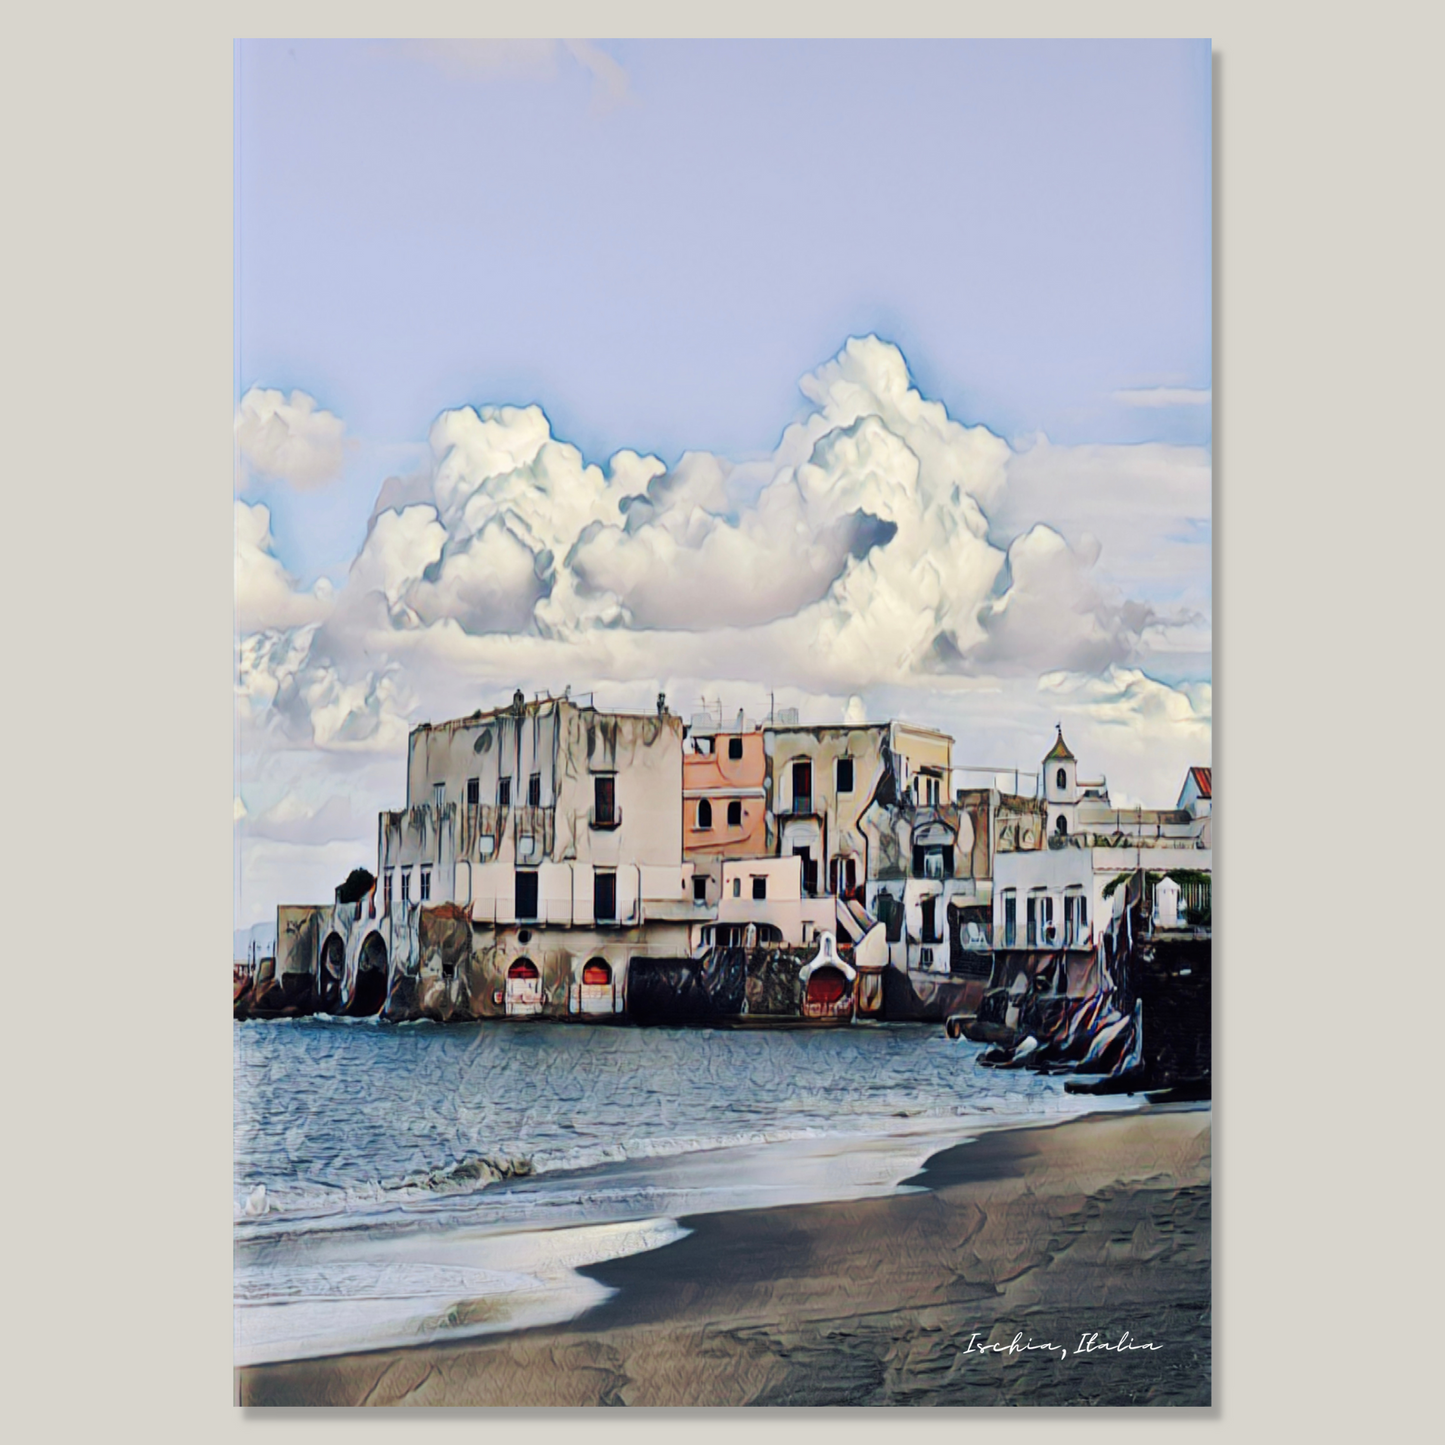 Fotolerret fra centro storico, Ischia. Små, murbygninger i hvitt og pastell, og sandstrand.. Blå himmel med markerte skyer. Typisk sjarmerende italiensk. Motivet er bearbeidet grafisk for å få sitt særpreg.